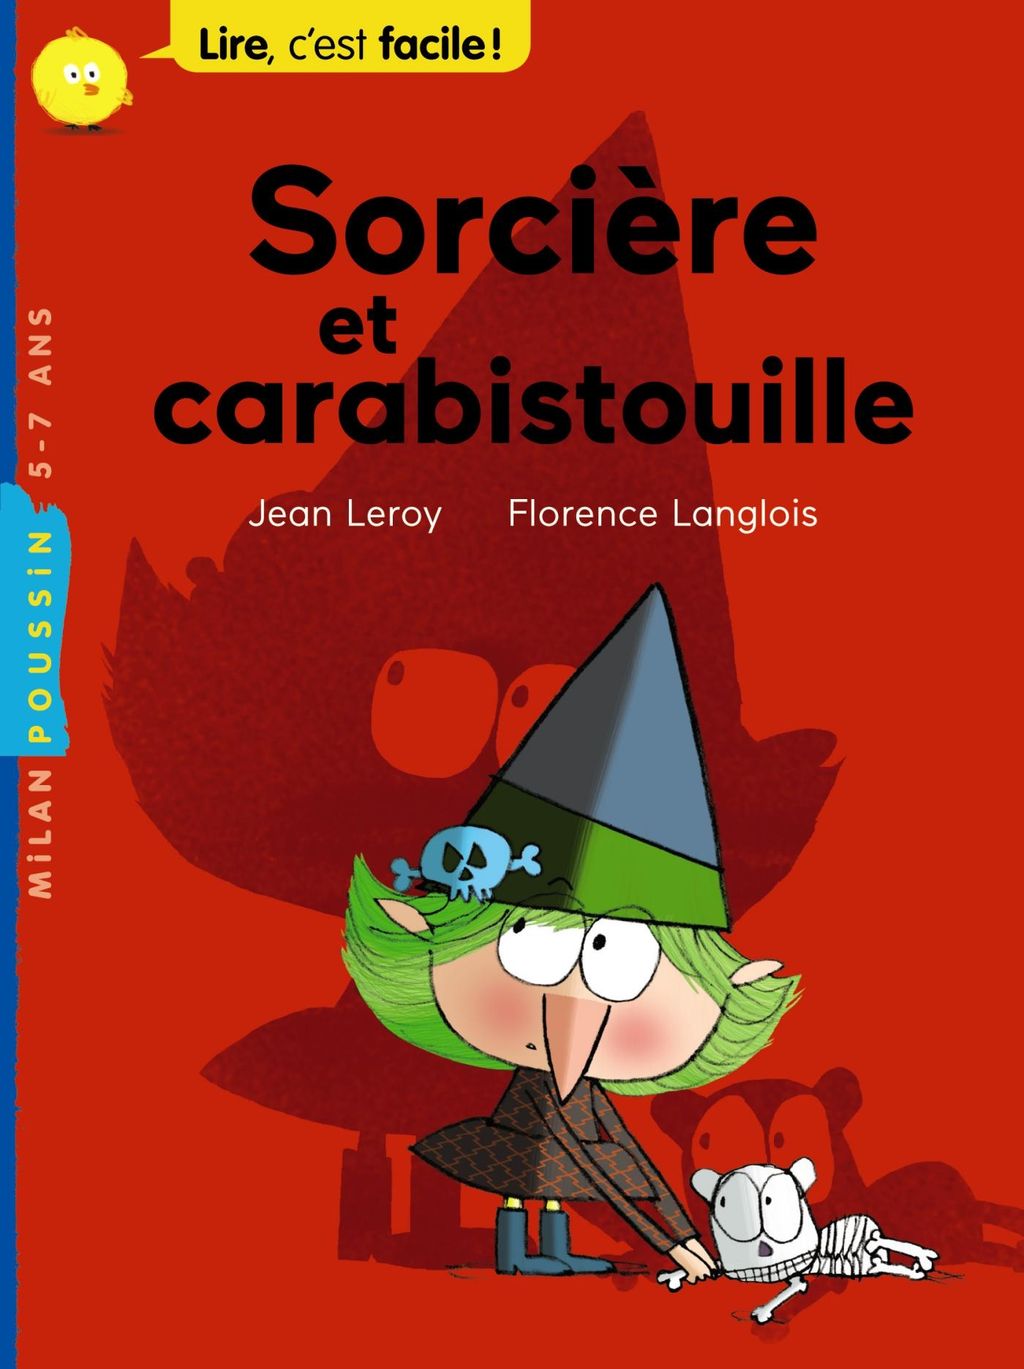 « Sorcière et carabistouille » cover